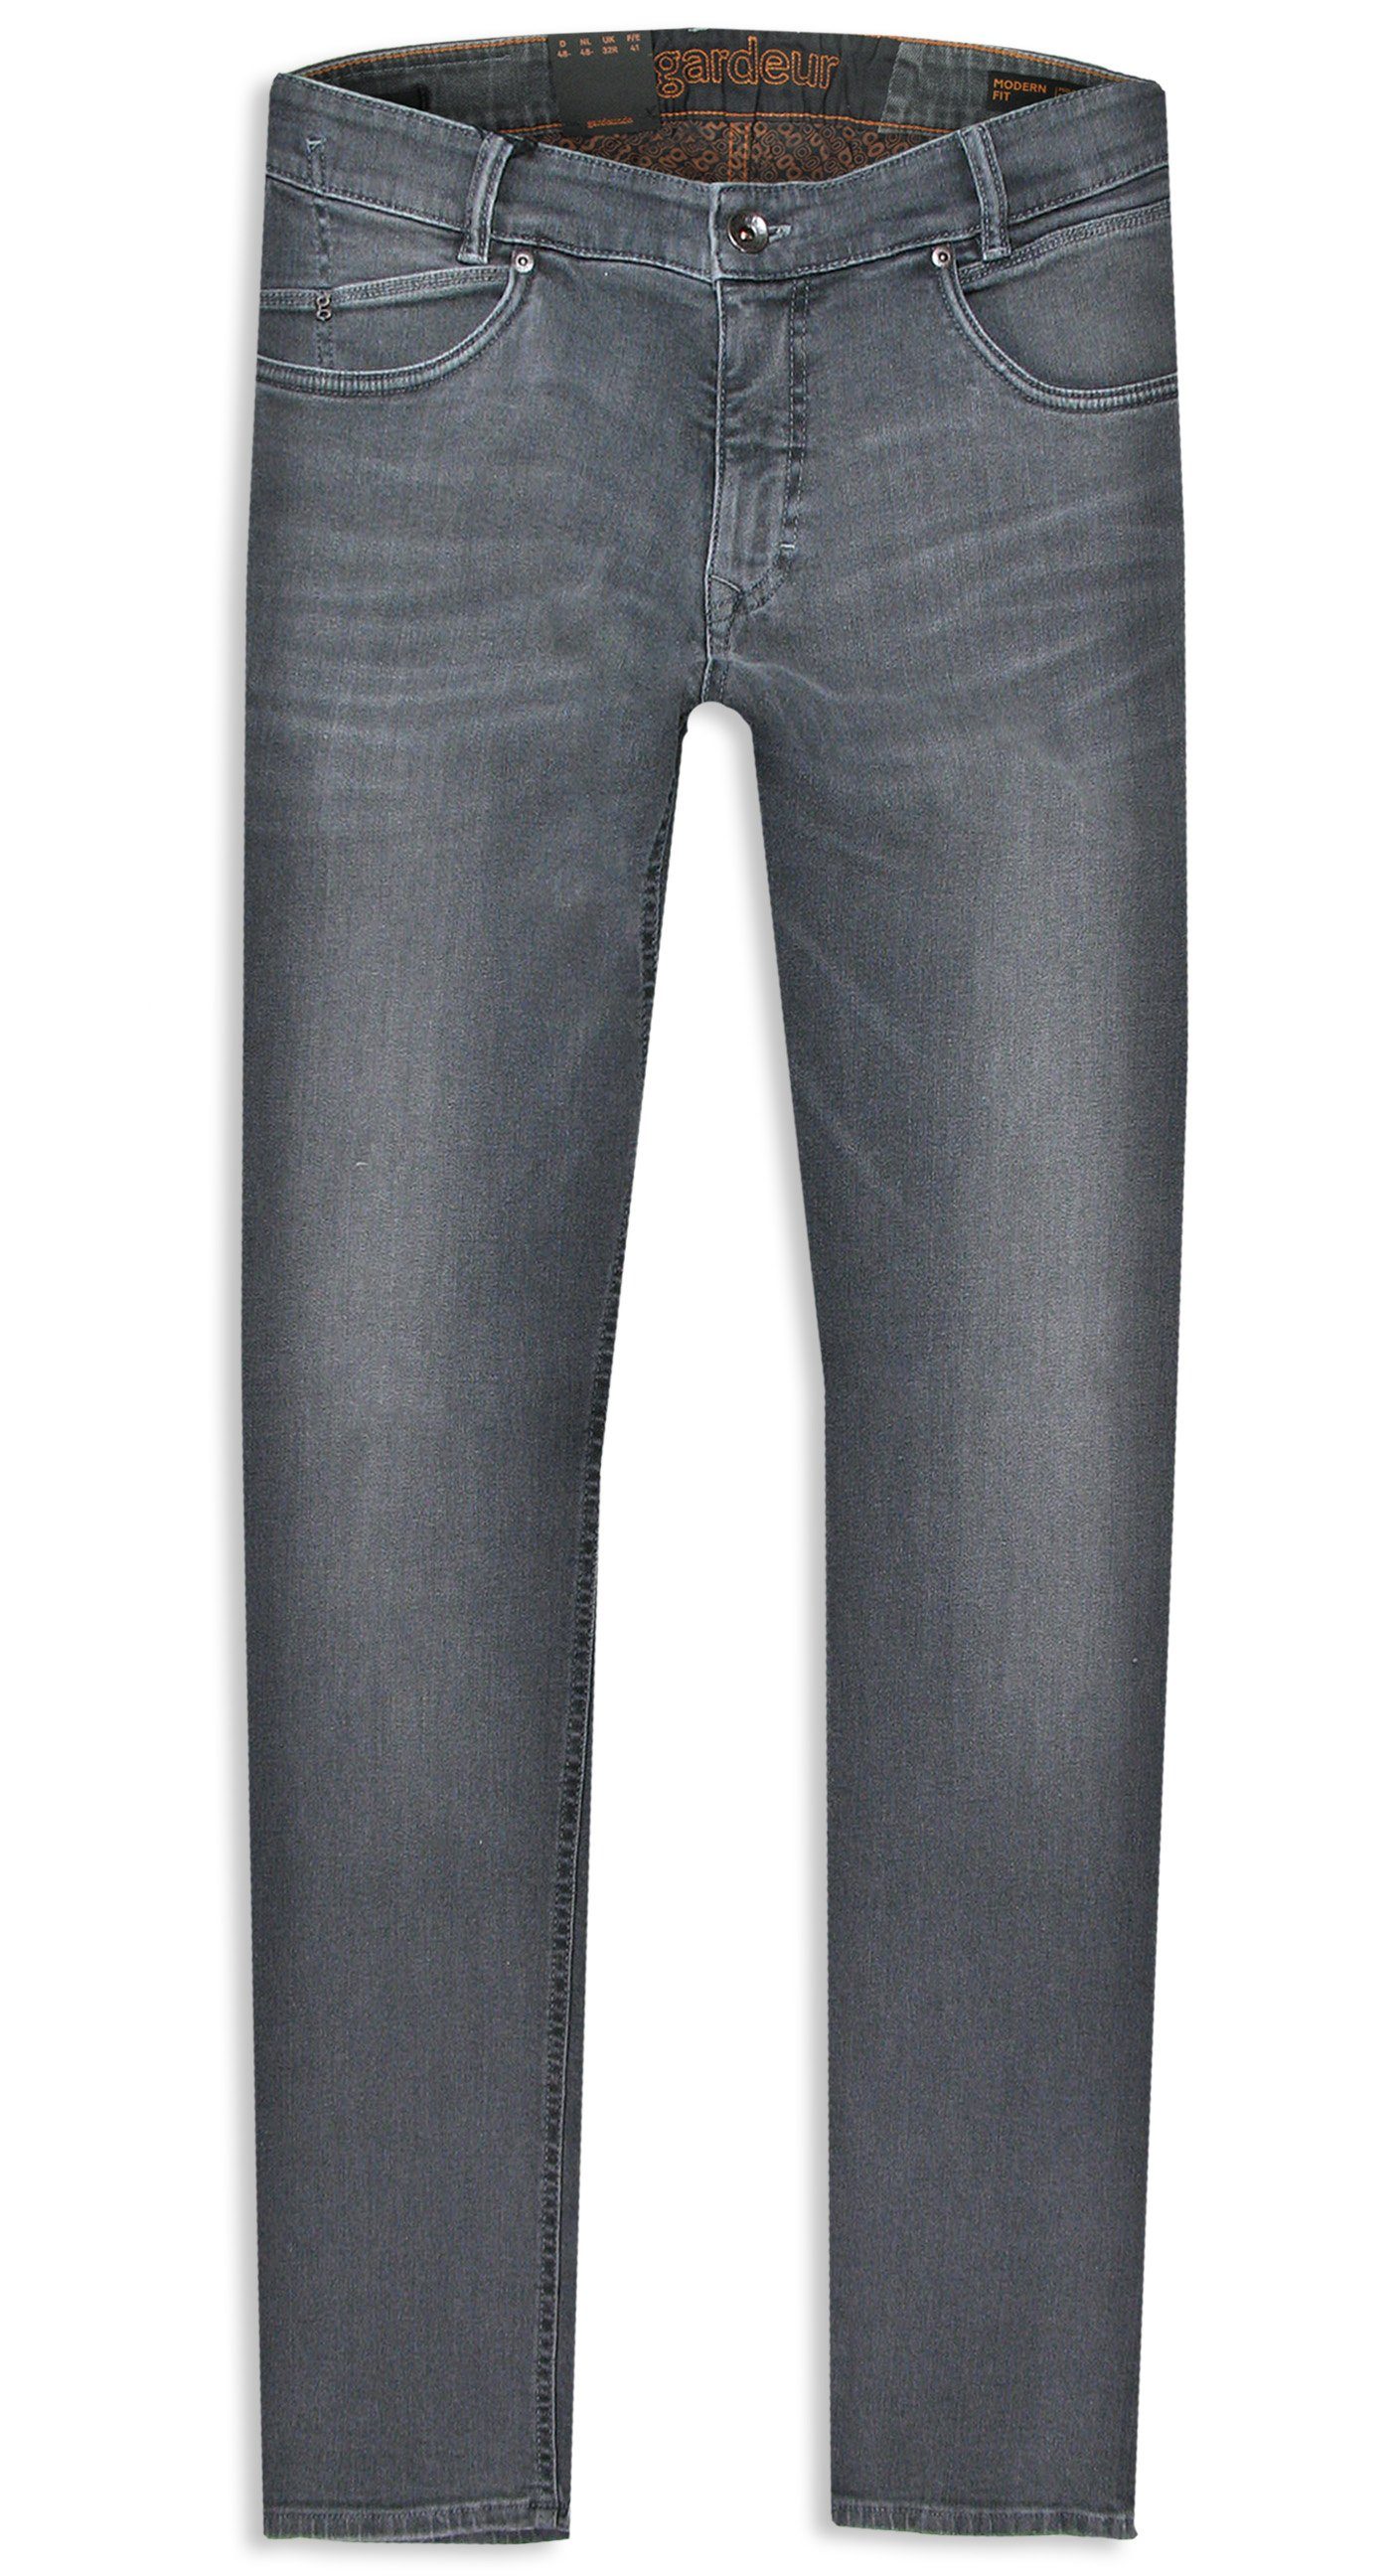 Herren Jeans Atelier GARDEUR 5-Pocket-Jeans Bennet Black Rivet Edition